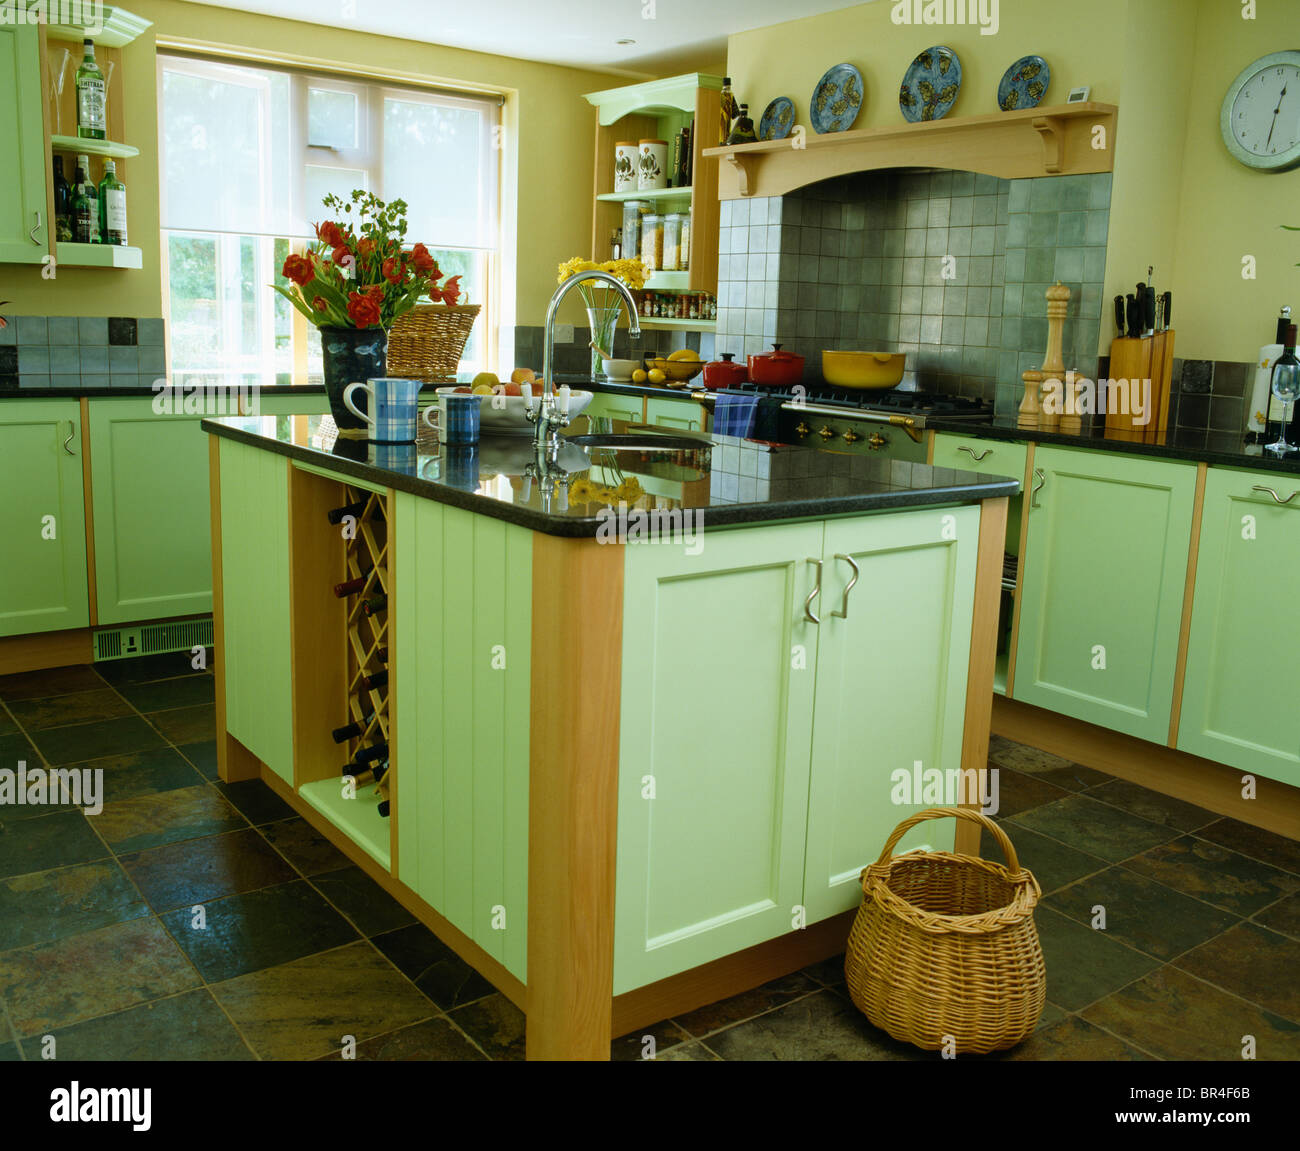 Korb am Boden neben Insel Einheit mit Granit-Arbeitsplatte in Landhaus-Küche  mit hellen grünen montierten Einheiten Stockfotografie - Alamy